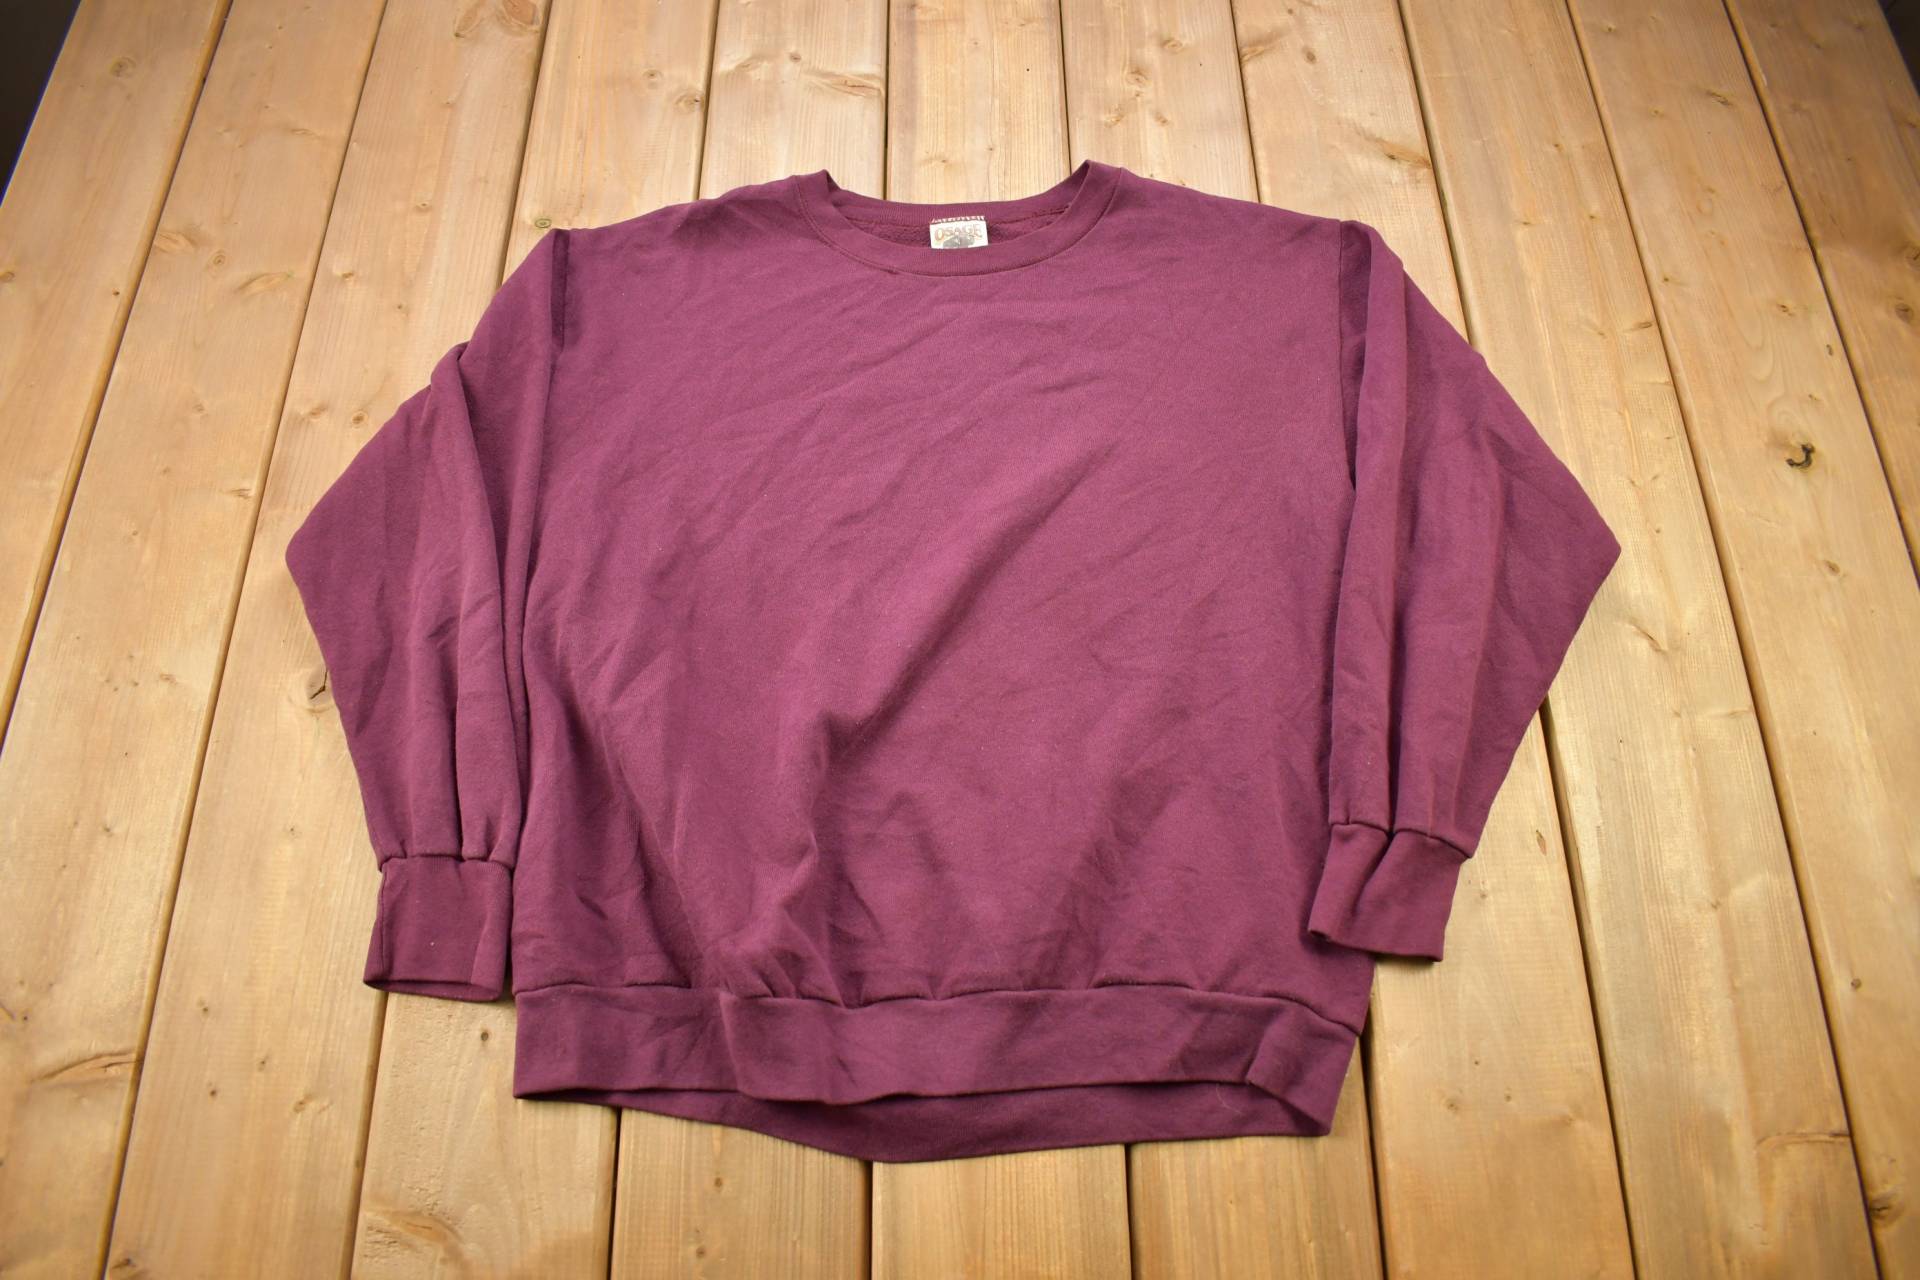 Vintage 1990S Osage River Blank Sweatshirt Mit Rundhalsausschnitt/90S Crewneck Made in Usa Essential Streetwear von Lostboysvintage